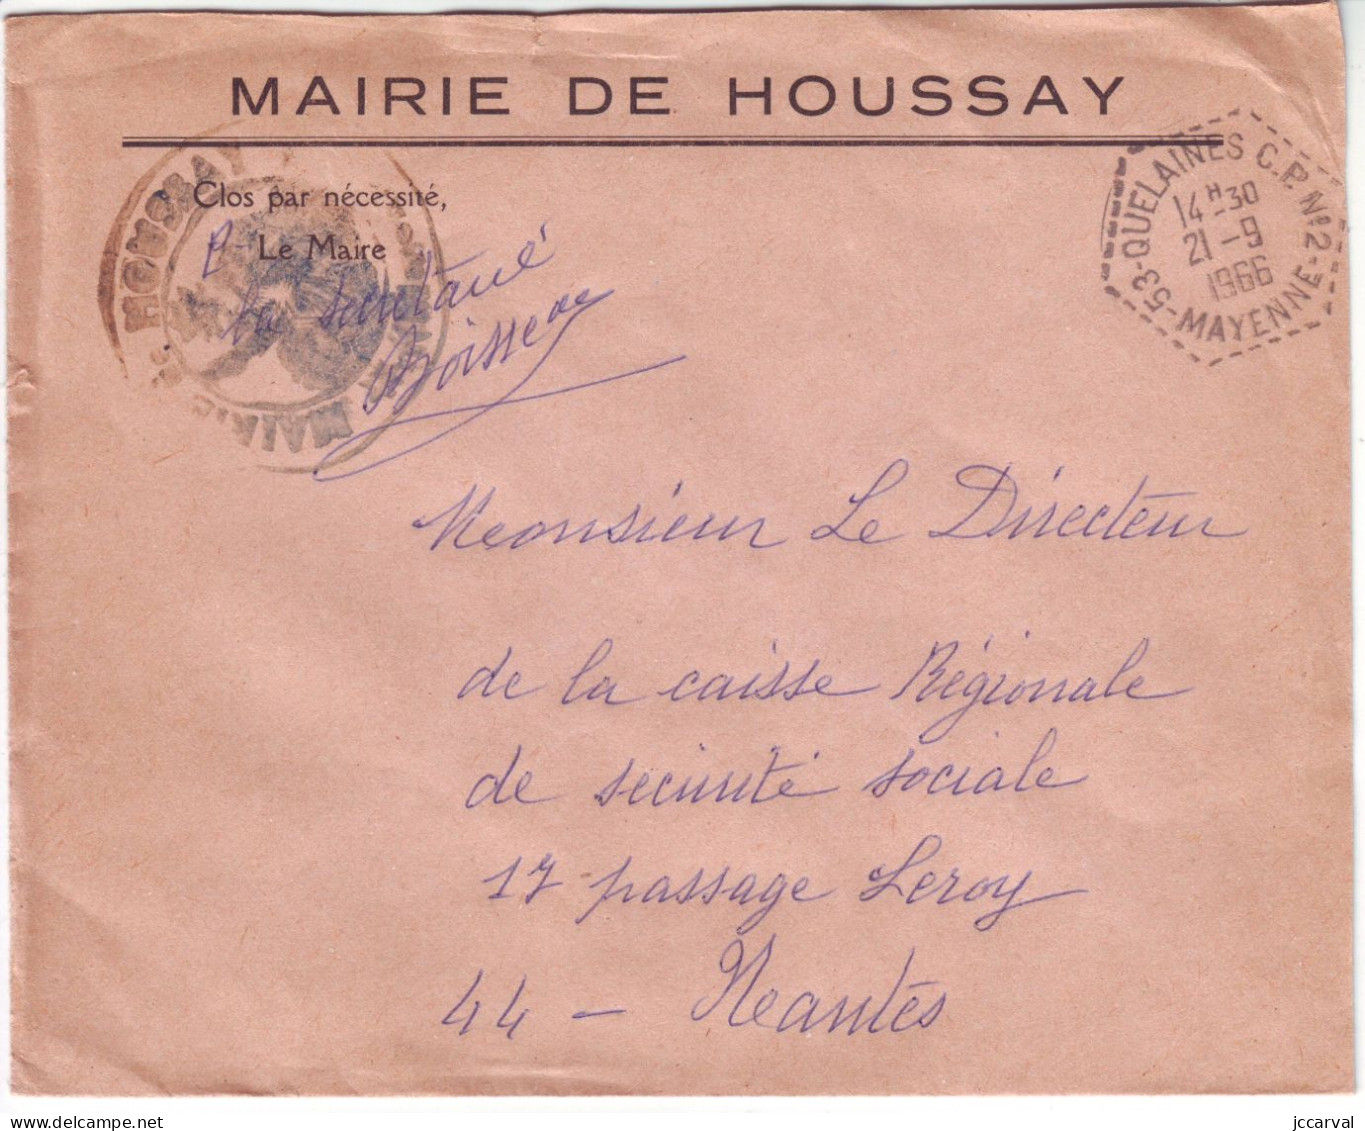 Mayenne Réseau Automobile Rural - Quelaines CP N°2 - Type G9 - Houssay - Manual Postmarks